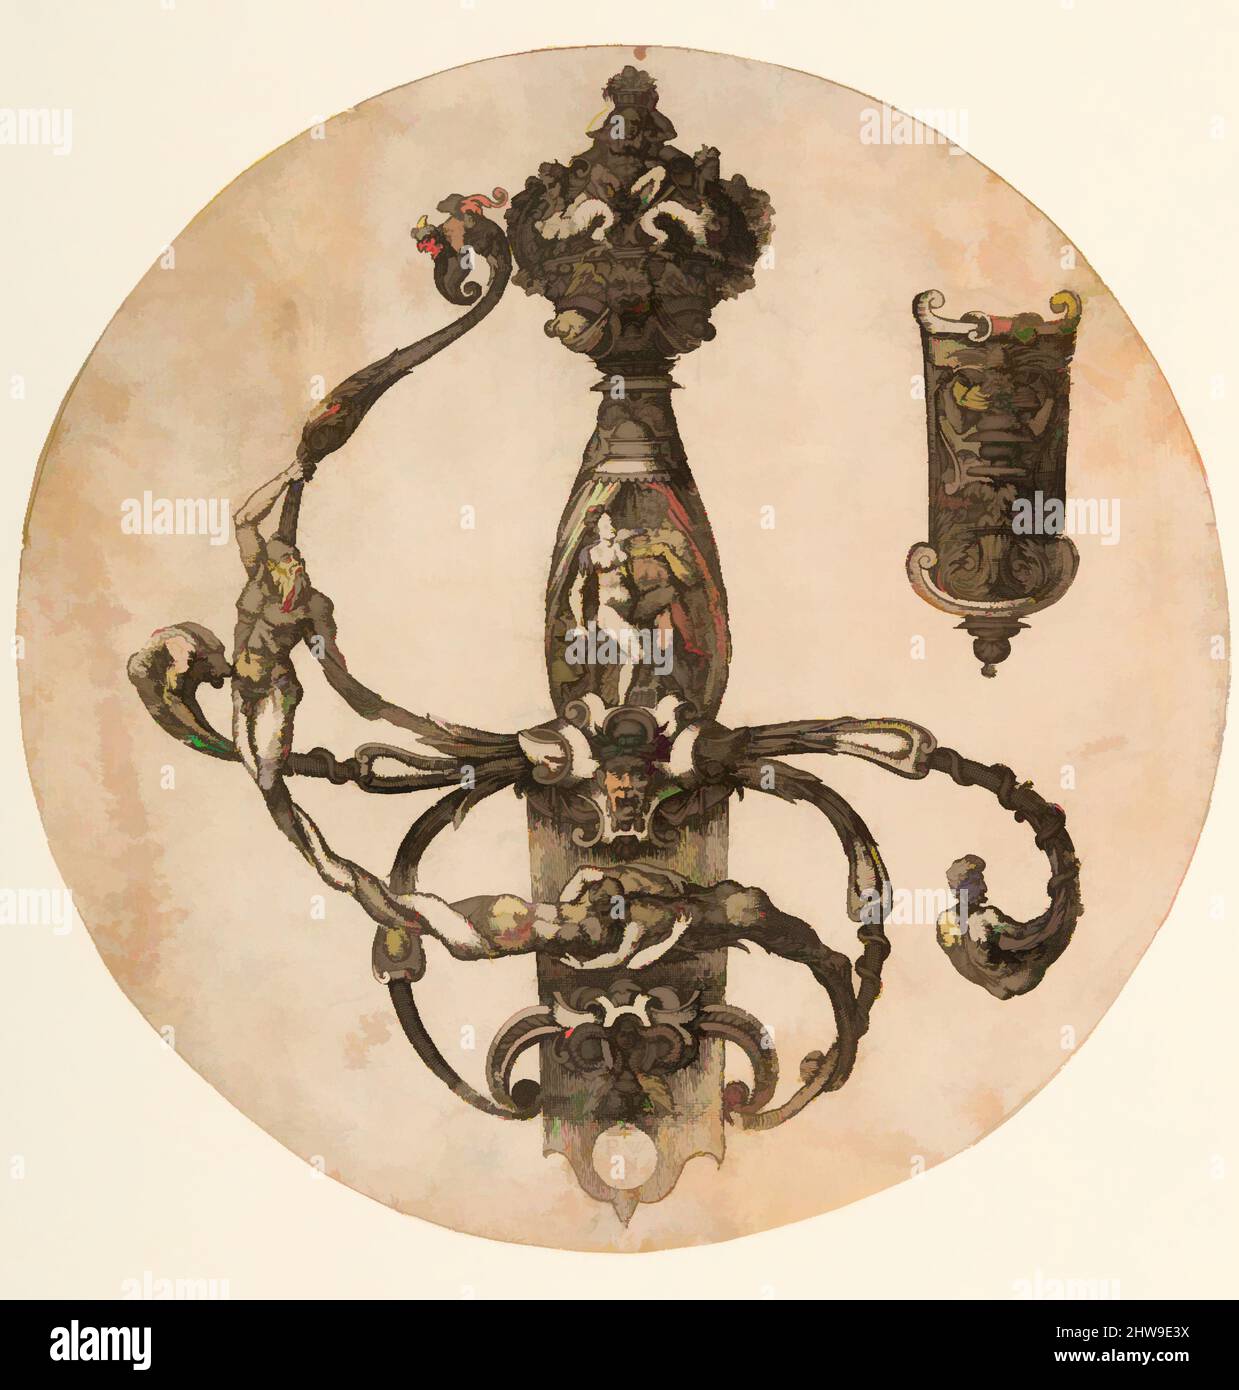 Arte ispirata da Design for a Rapier hilt and scabbard Chape, 1555, francese, incisione, incisione, Diam. 7 1/2 poll. (19,1 cm), opere su incisioni su carta, Pierre Woeiriot de Bouzey II (francese, Neufchâteau 1532–1599 Damblain), questa stampa di un'elegante cresta a grappa decorata è una bella, opere classiche modernizzate da Artotop con un tuffo di modernità. Forme, colore e valore, impatto visivo accattivante sulle emozioni artistiche attraverso la libertà delle opere d'arte in modo contemporaneo. Un messaggio senza tempo che persegue una nuova direzione selvaggiamente creativa. Artisti che si rivolgono al supporto digitale e creano l'NFT Artotop Foto Stock